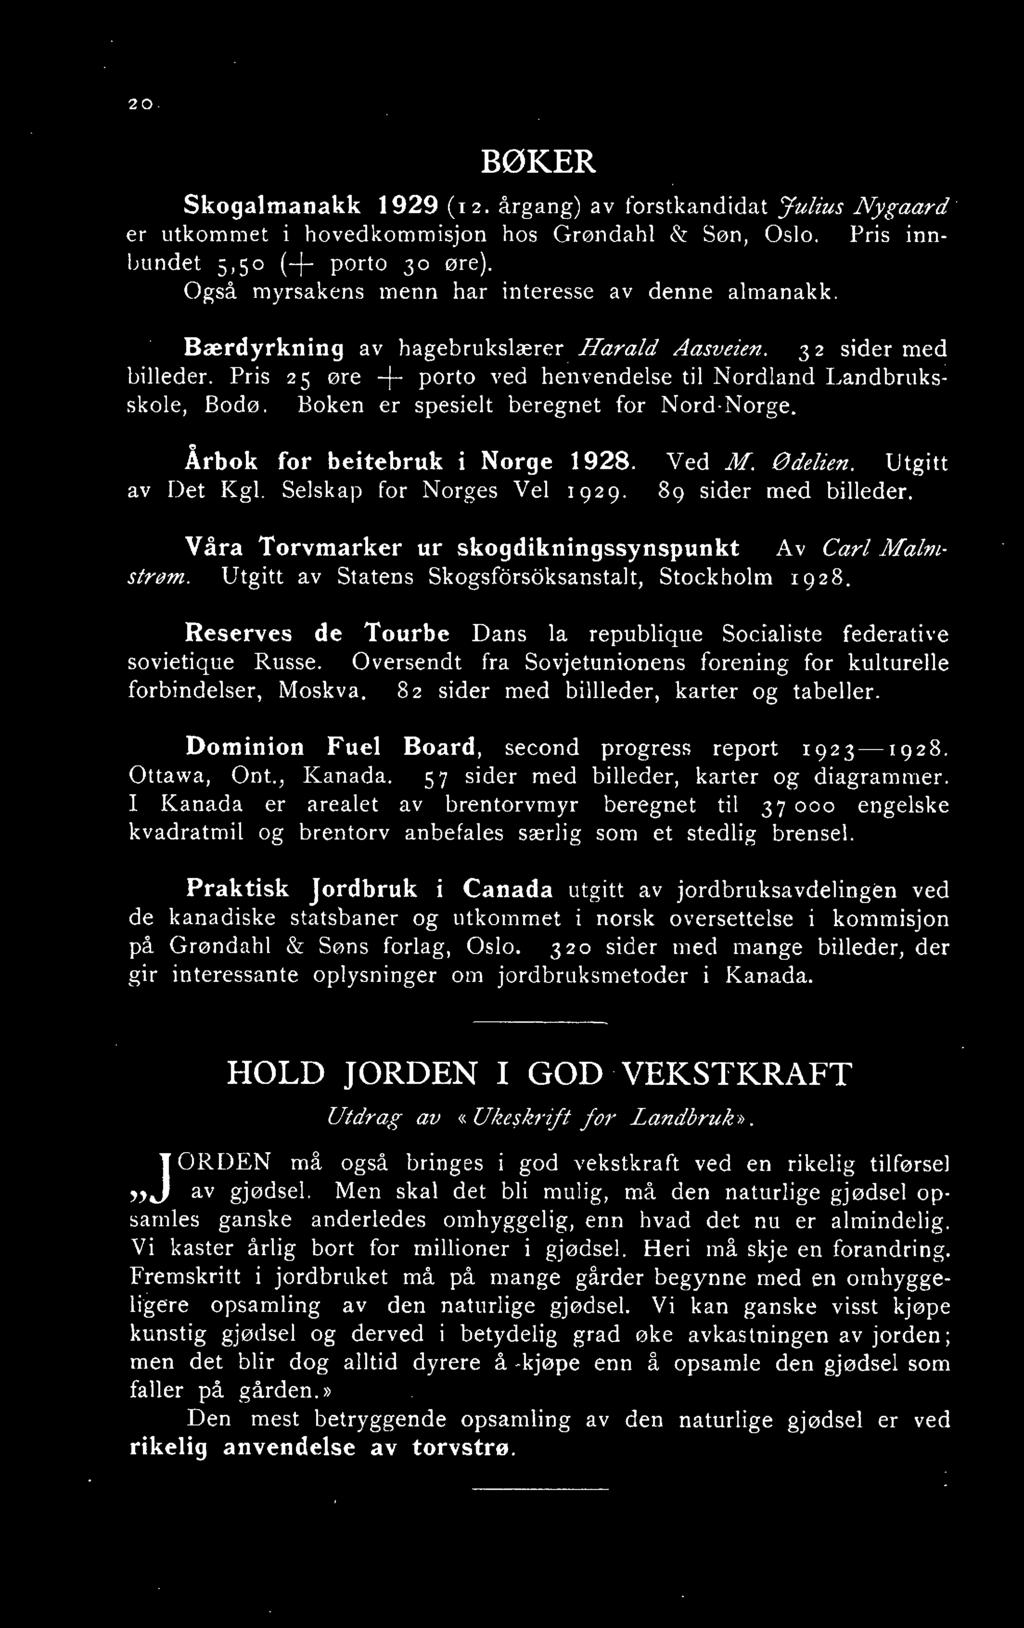 Boken er spesielt beregnet for Nord-Norge, Årbok for beitebruk i Norge 1928. av Det Kgl. Selskap for Norges Vel 1 929. Ved M. Ødelien. Utgitt 89 sider med billeder.